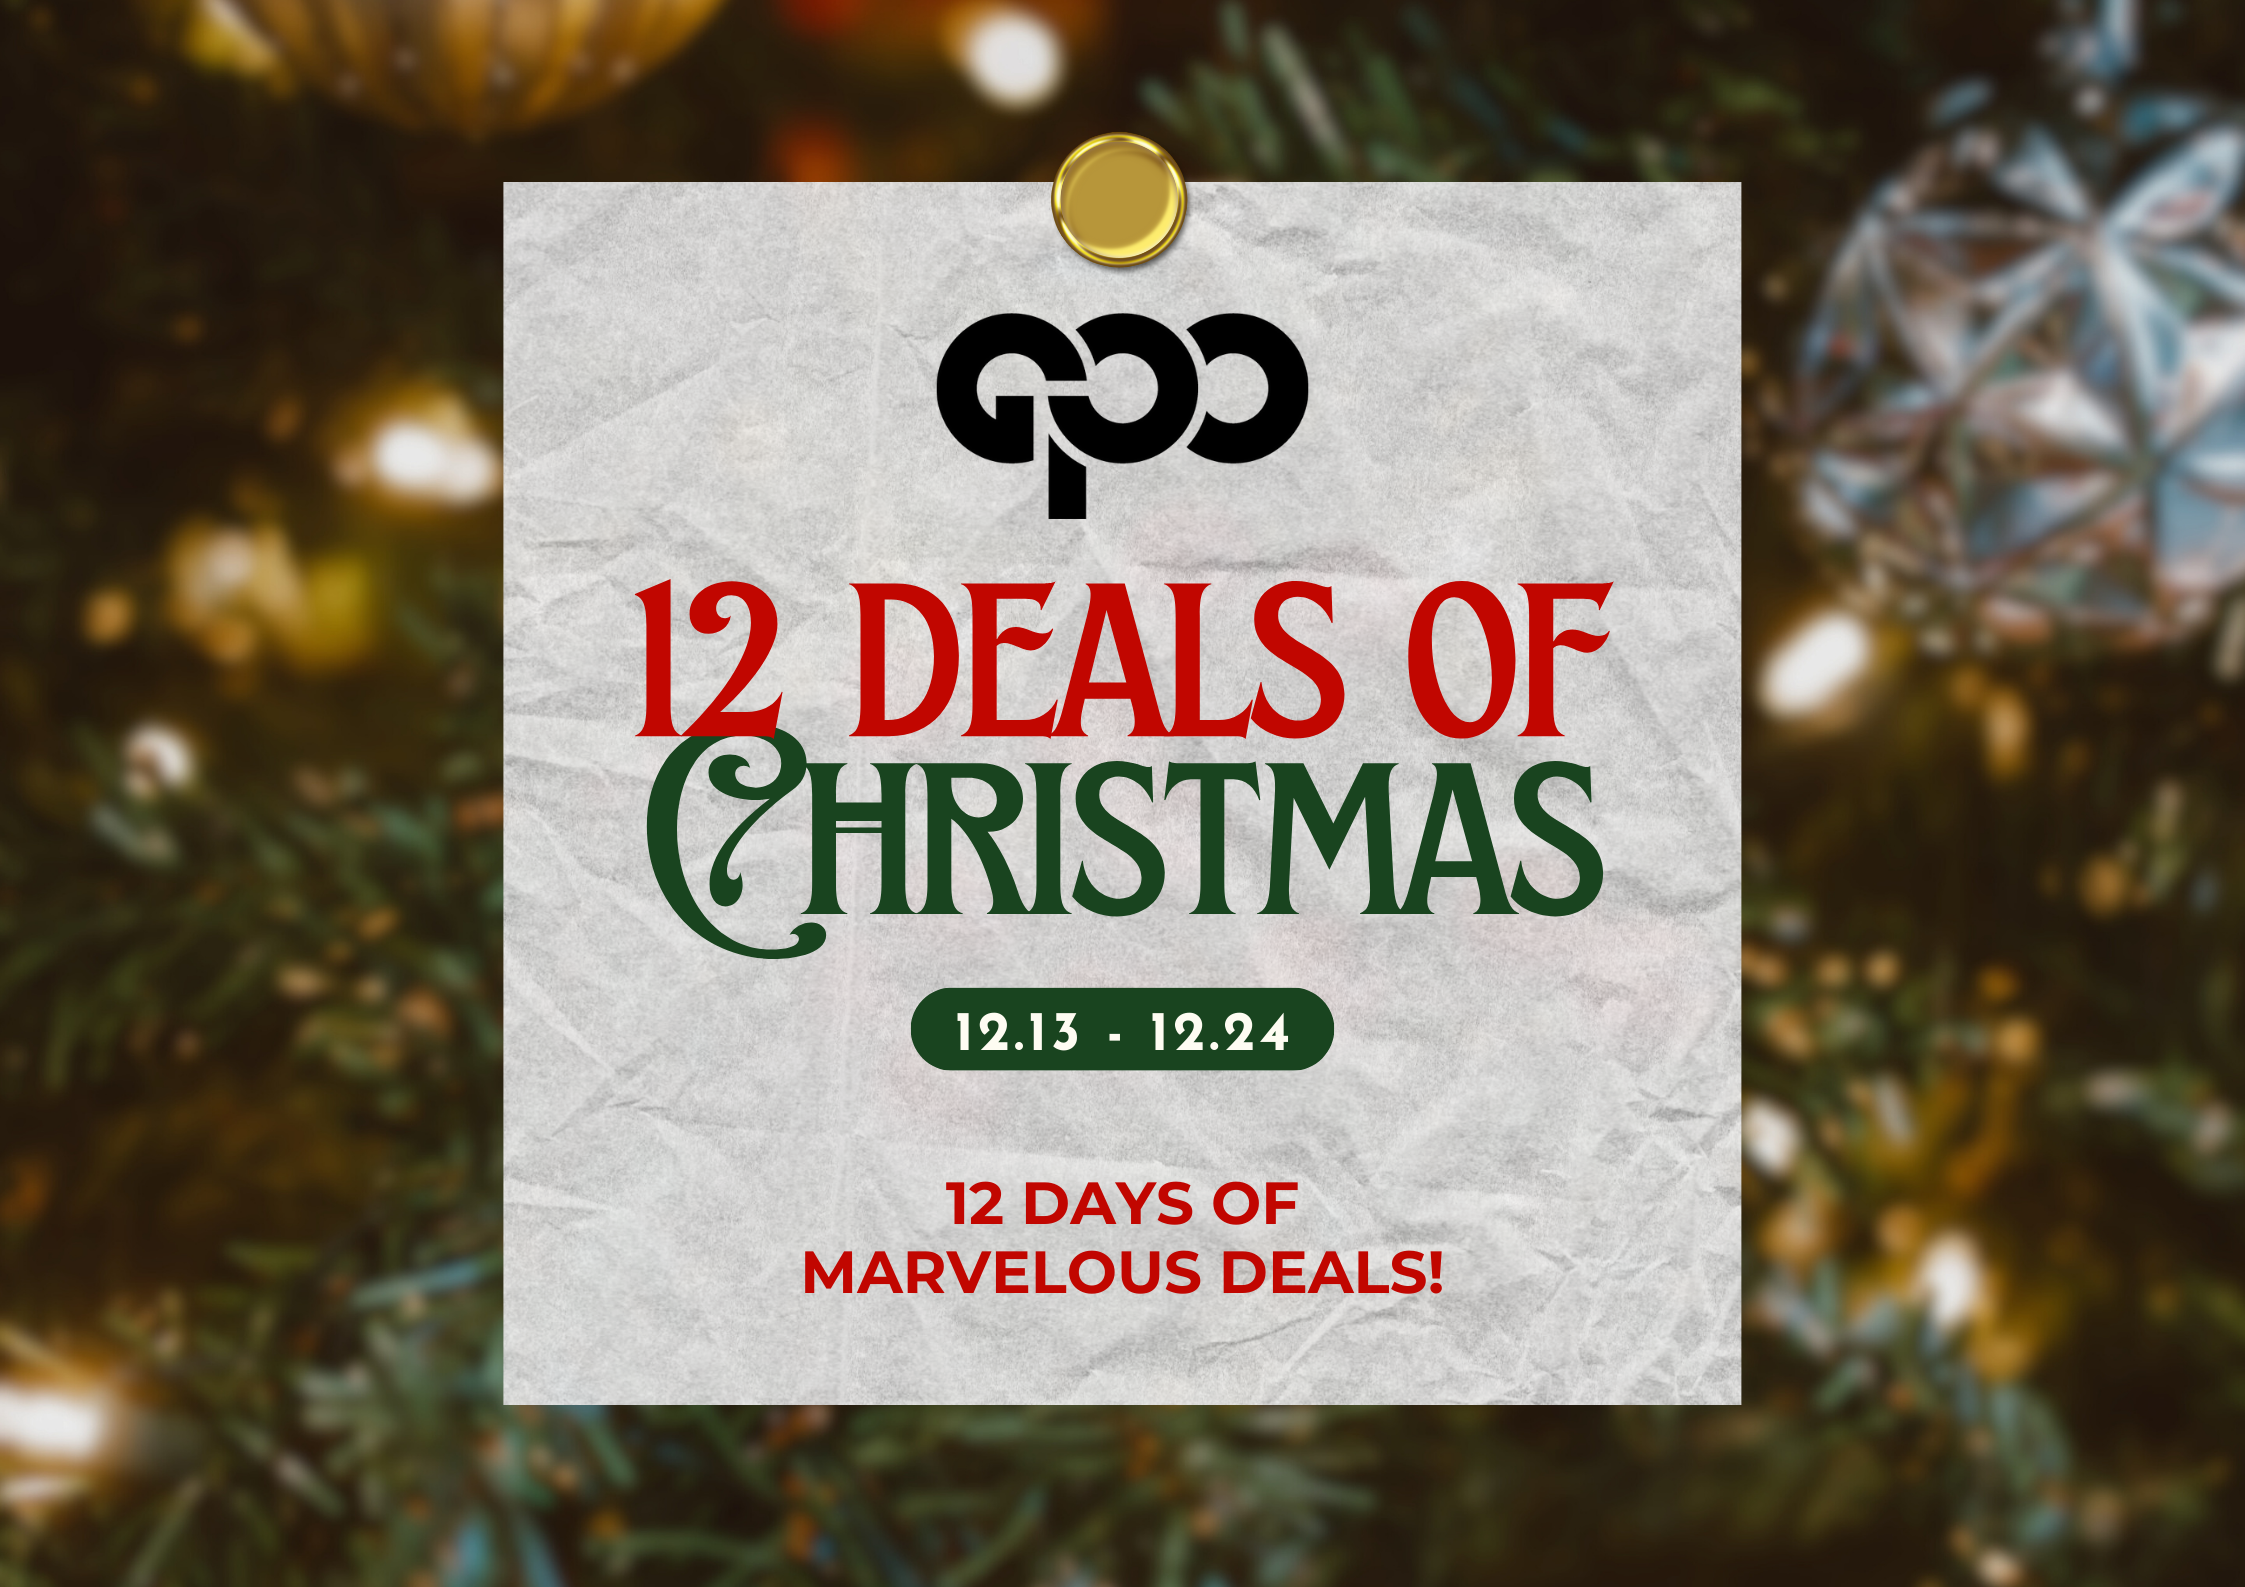 12 Deals of Christmas (December 19): Guess?